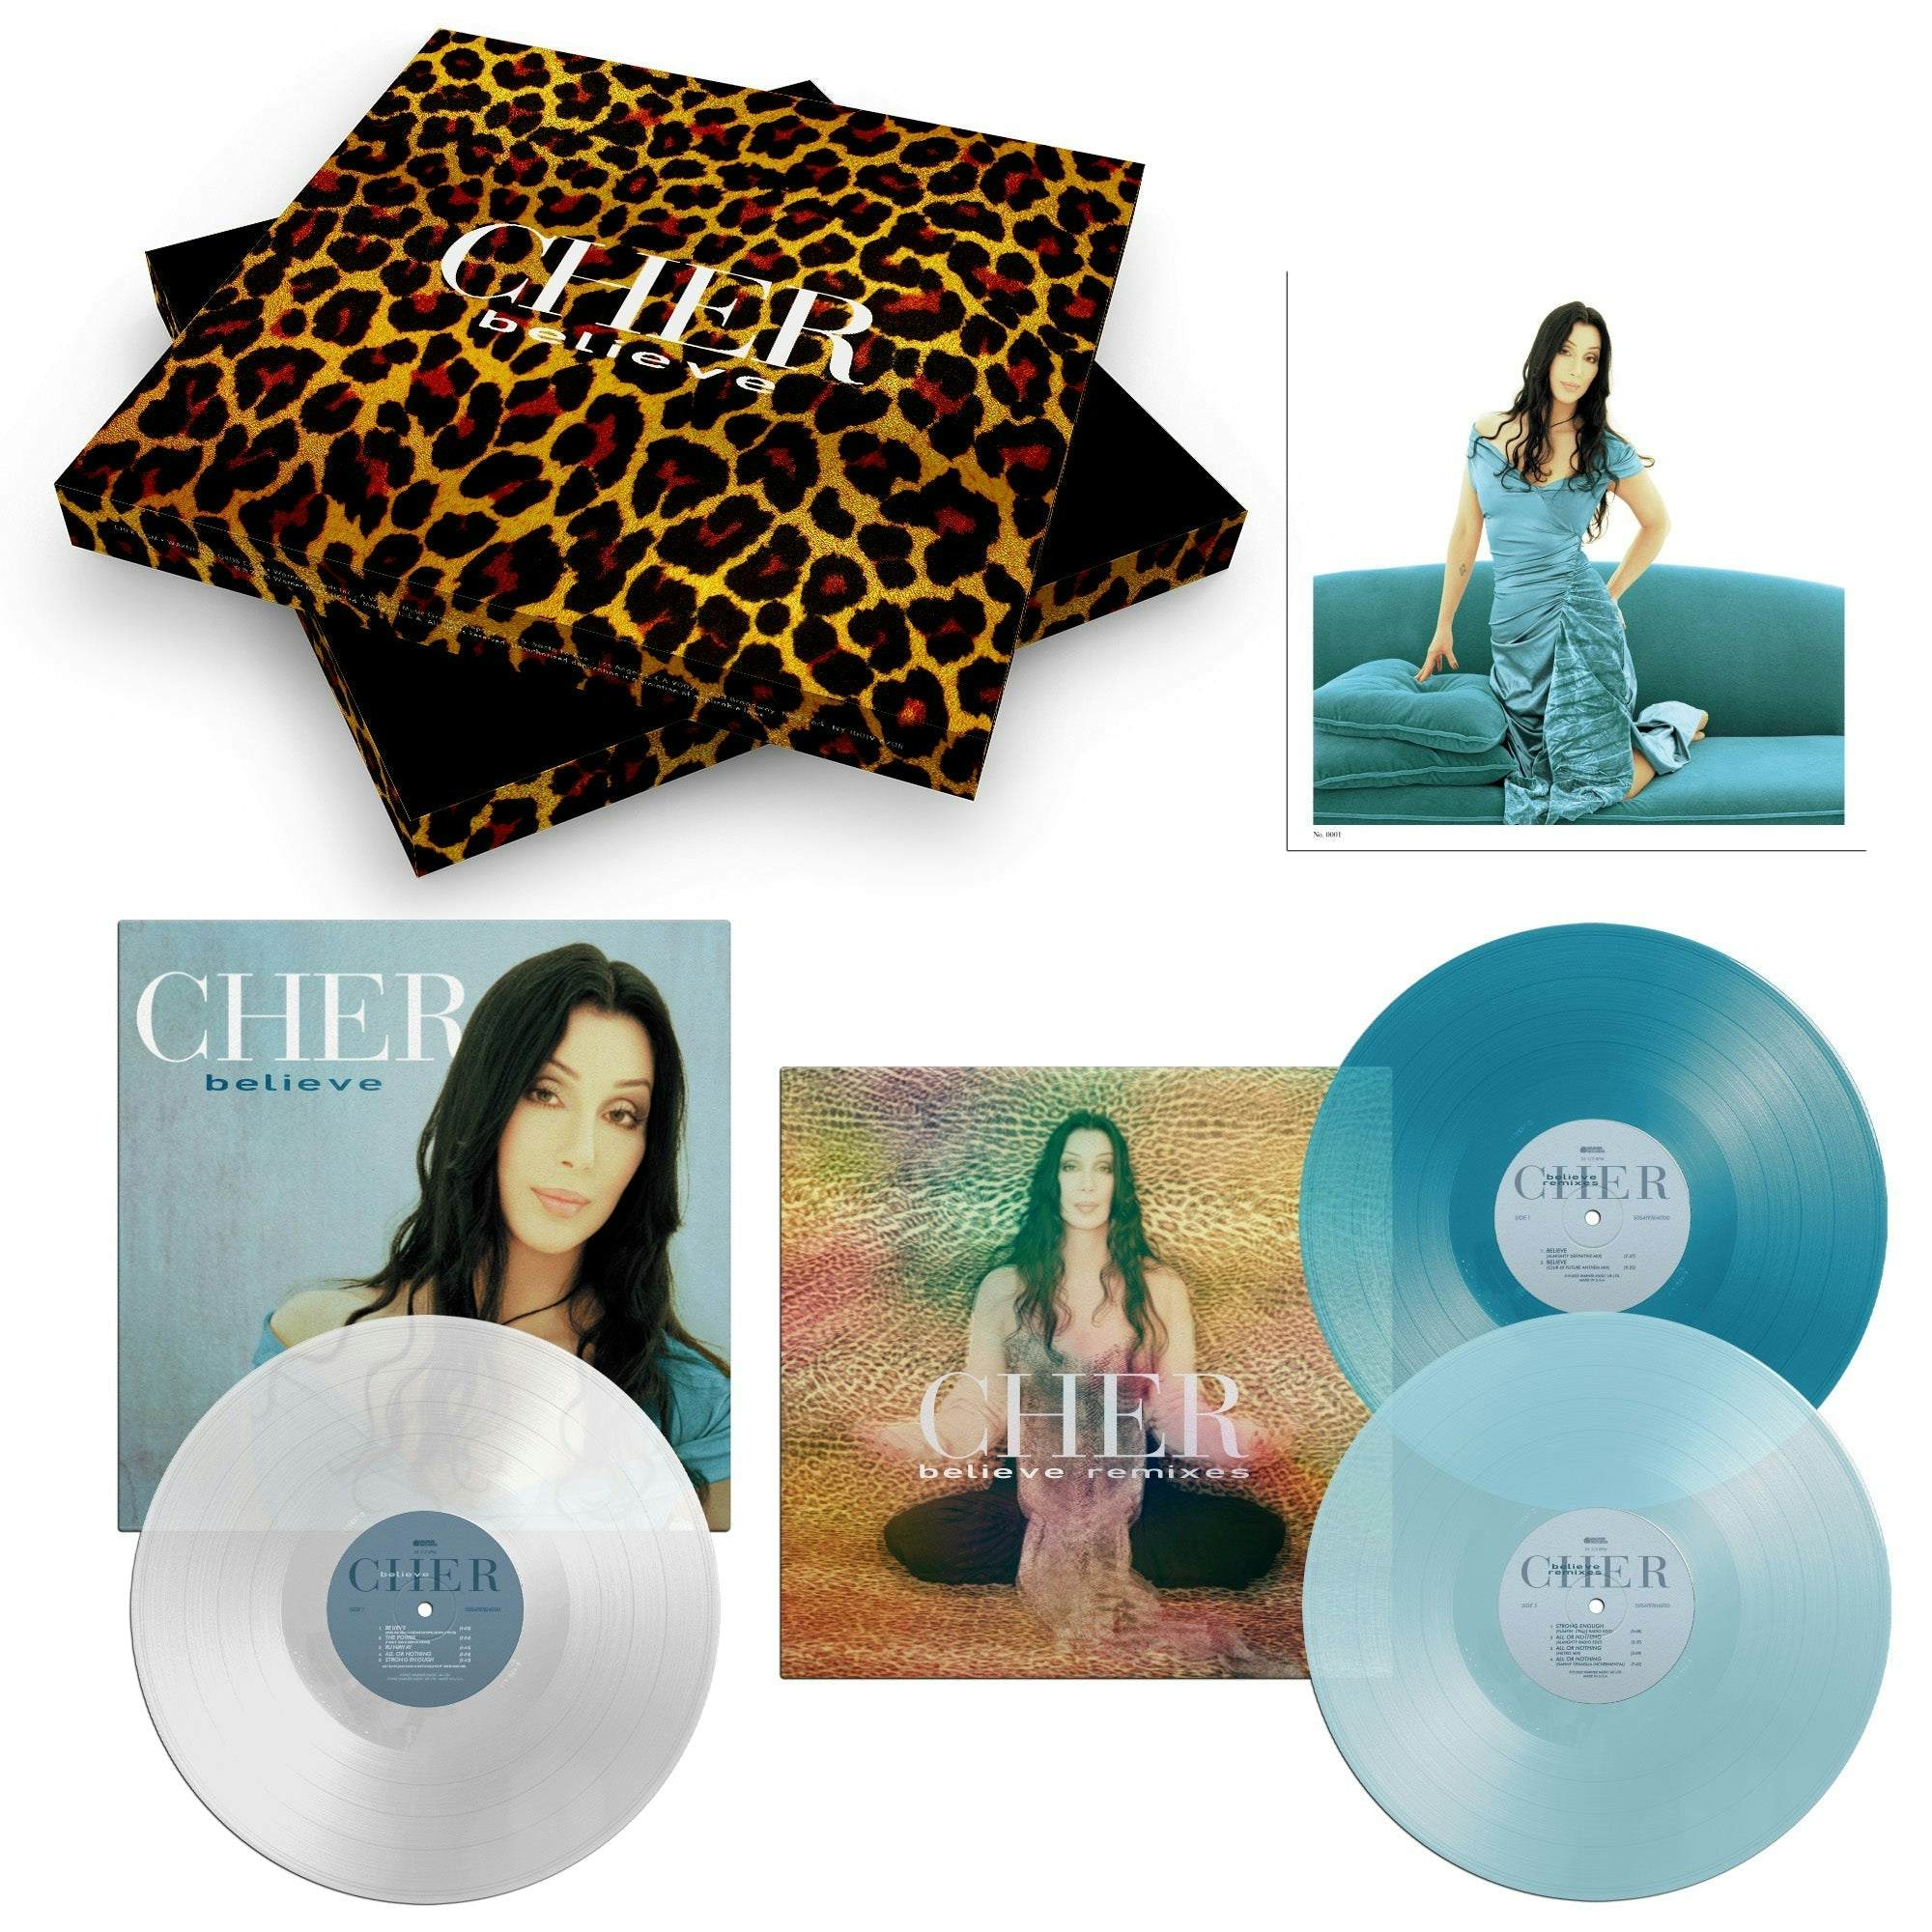 Фото cher believe. Света винил LP. Believe cher год. Cher - believe обложка альбома. Шер альбомы